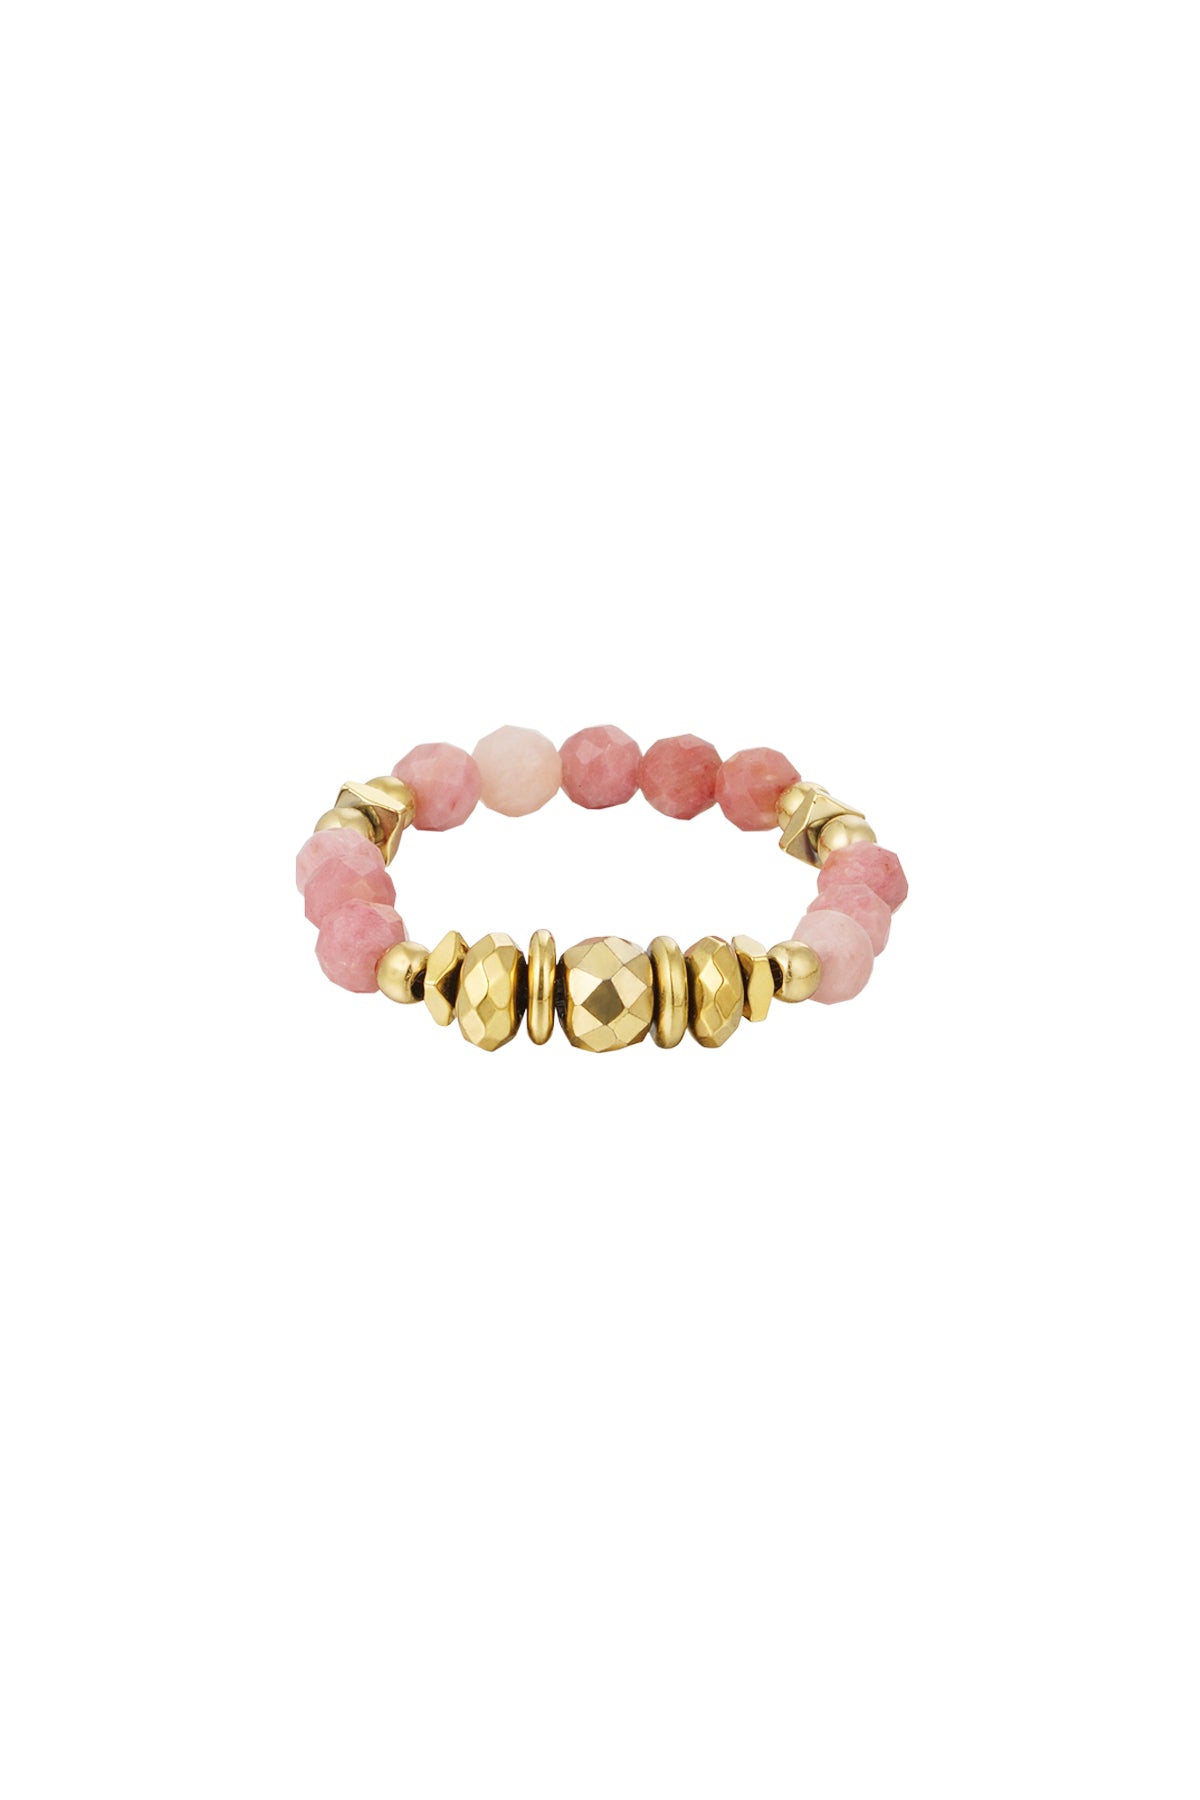 elastische ring met roze rhodochrosiet kralen en goudkleurige kralen in verschillende vormen